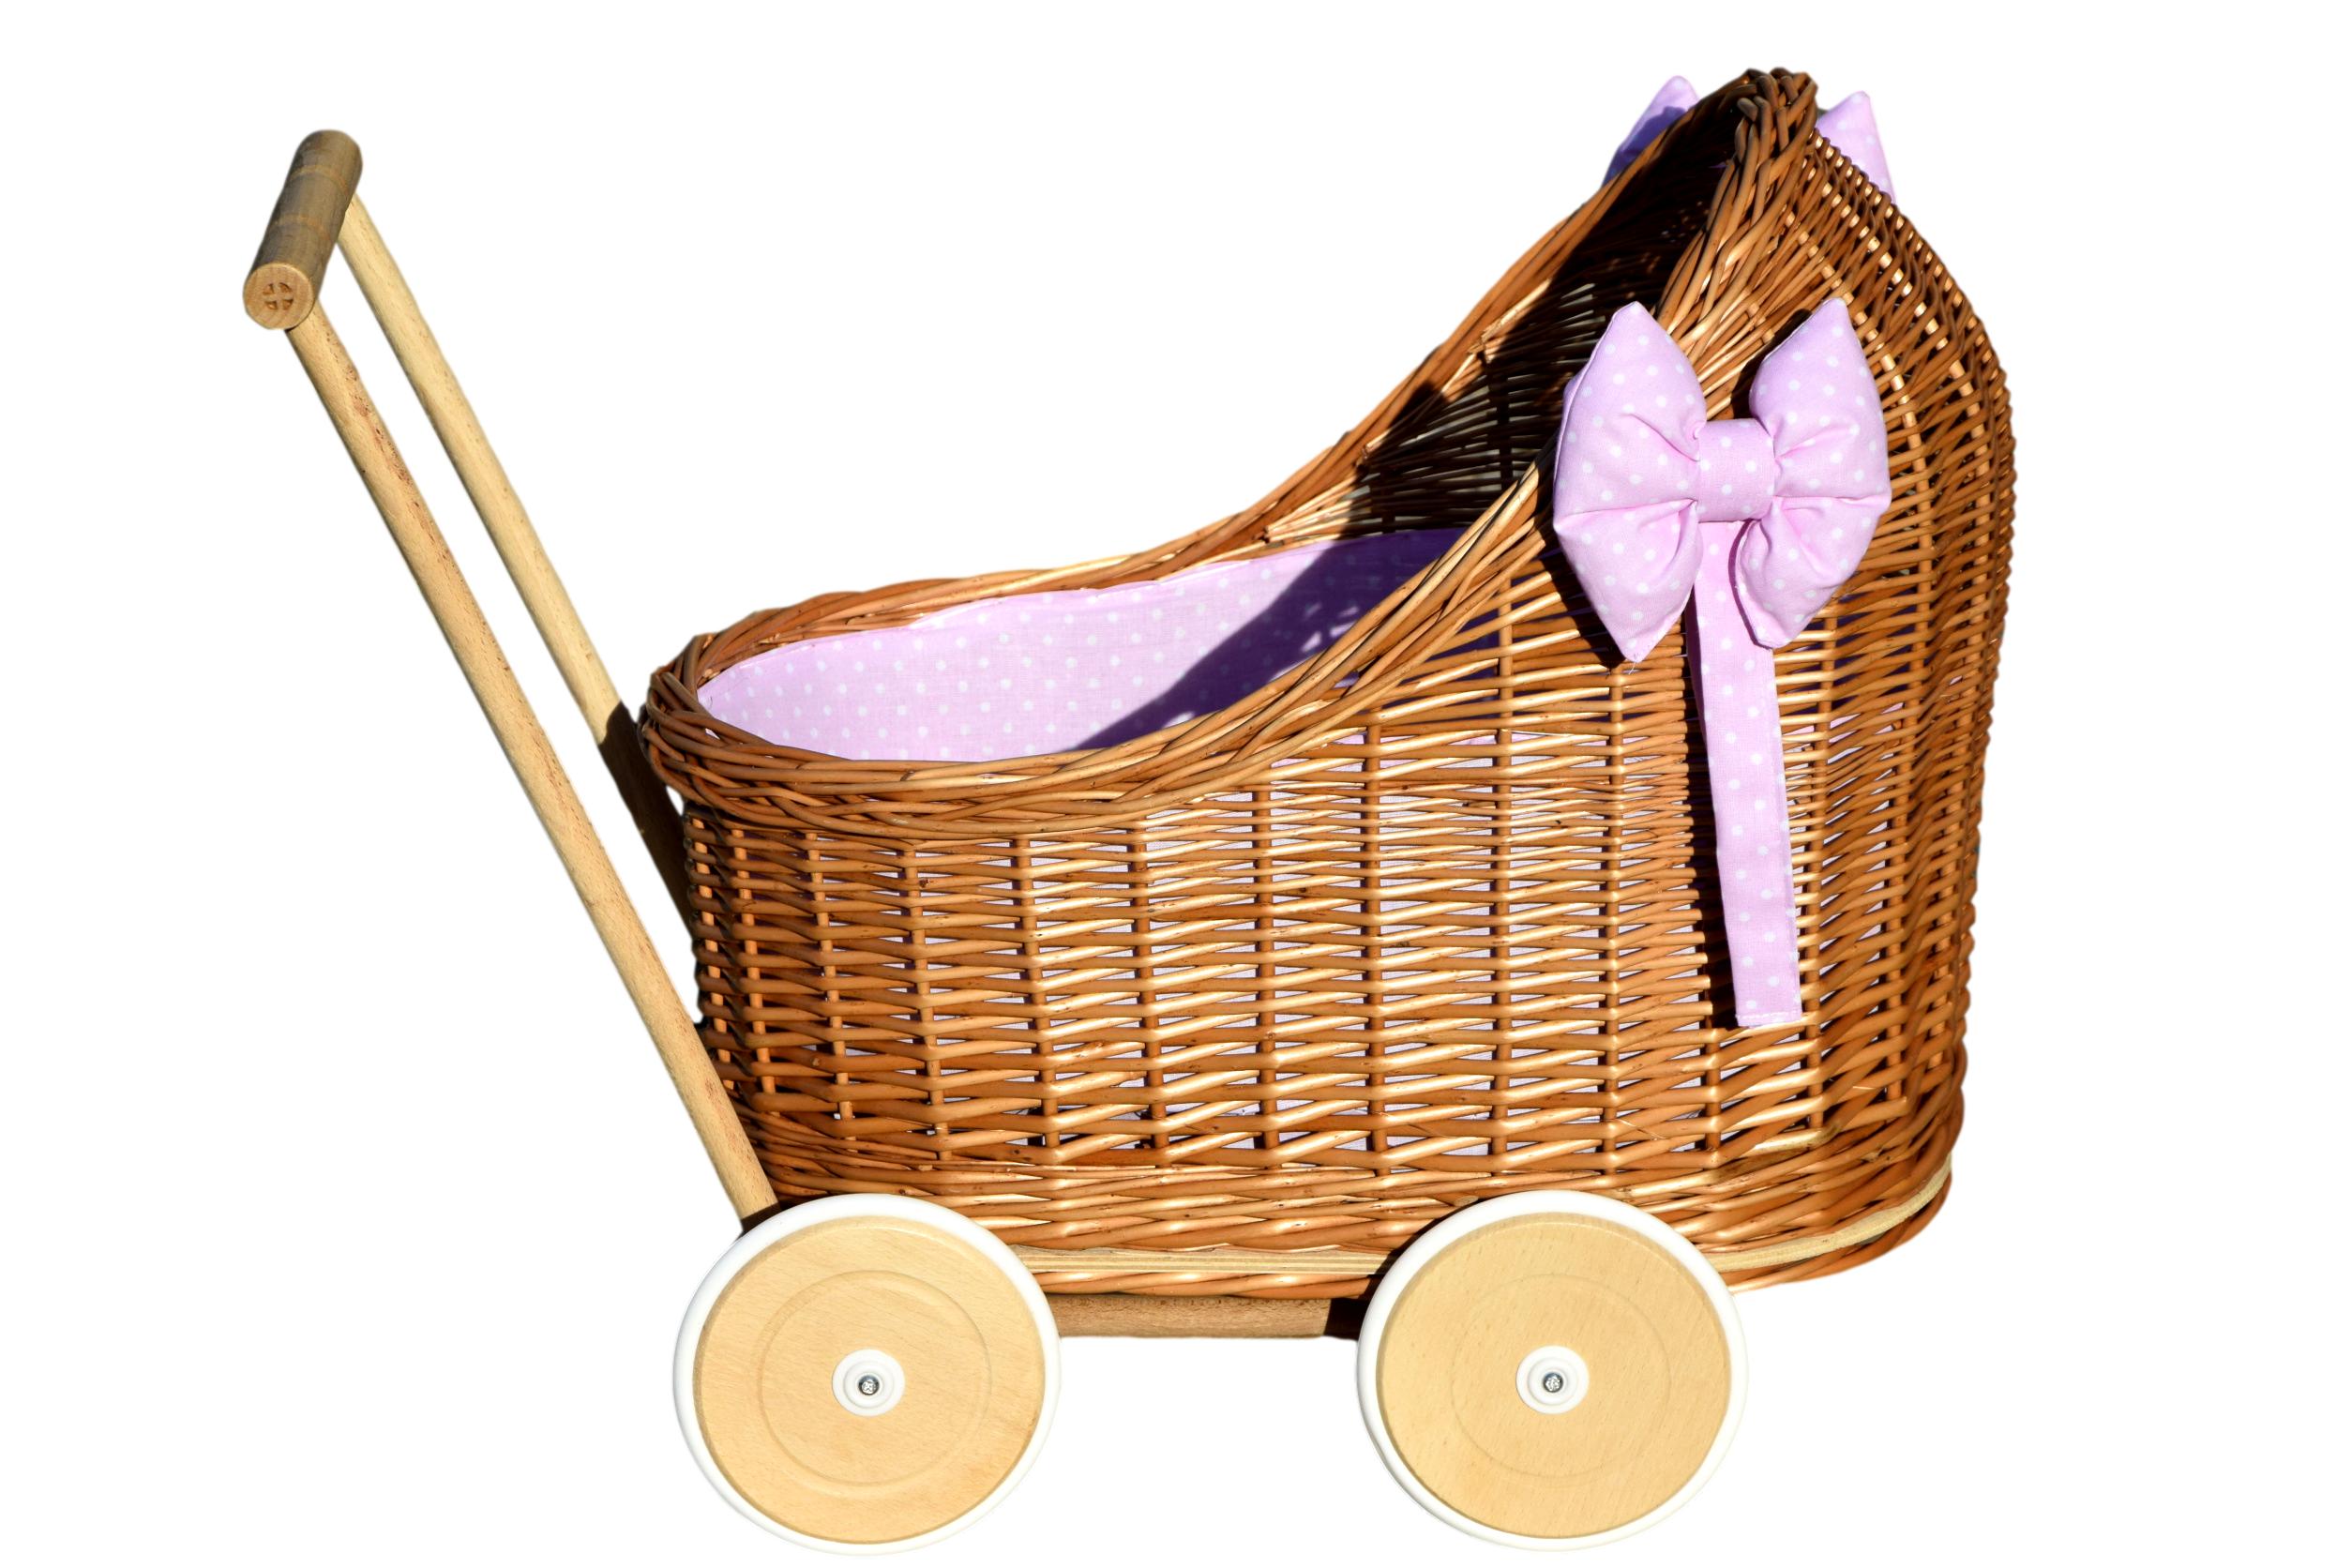 Wiklinowy wózek dla lalek z pościelą różową w kropki